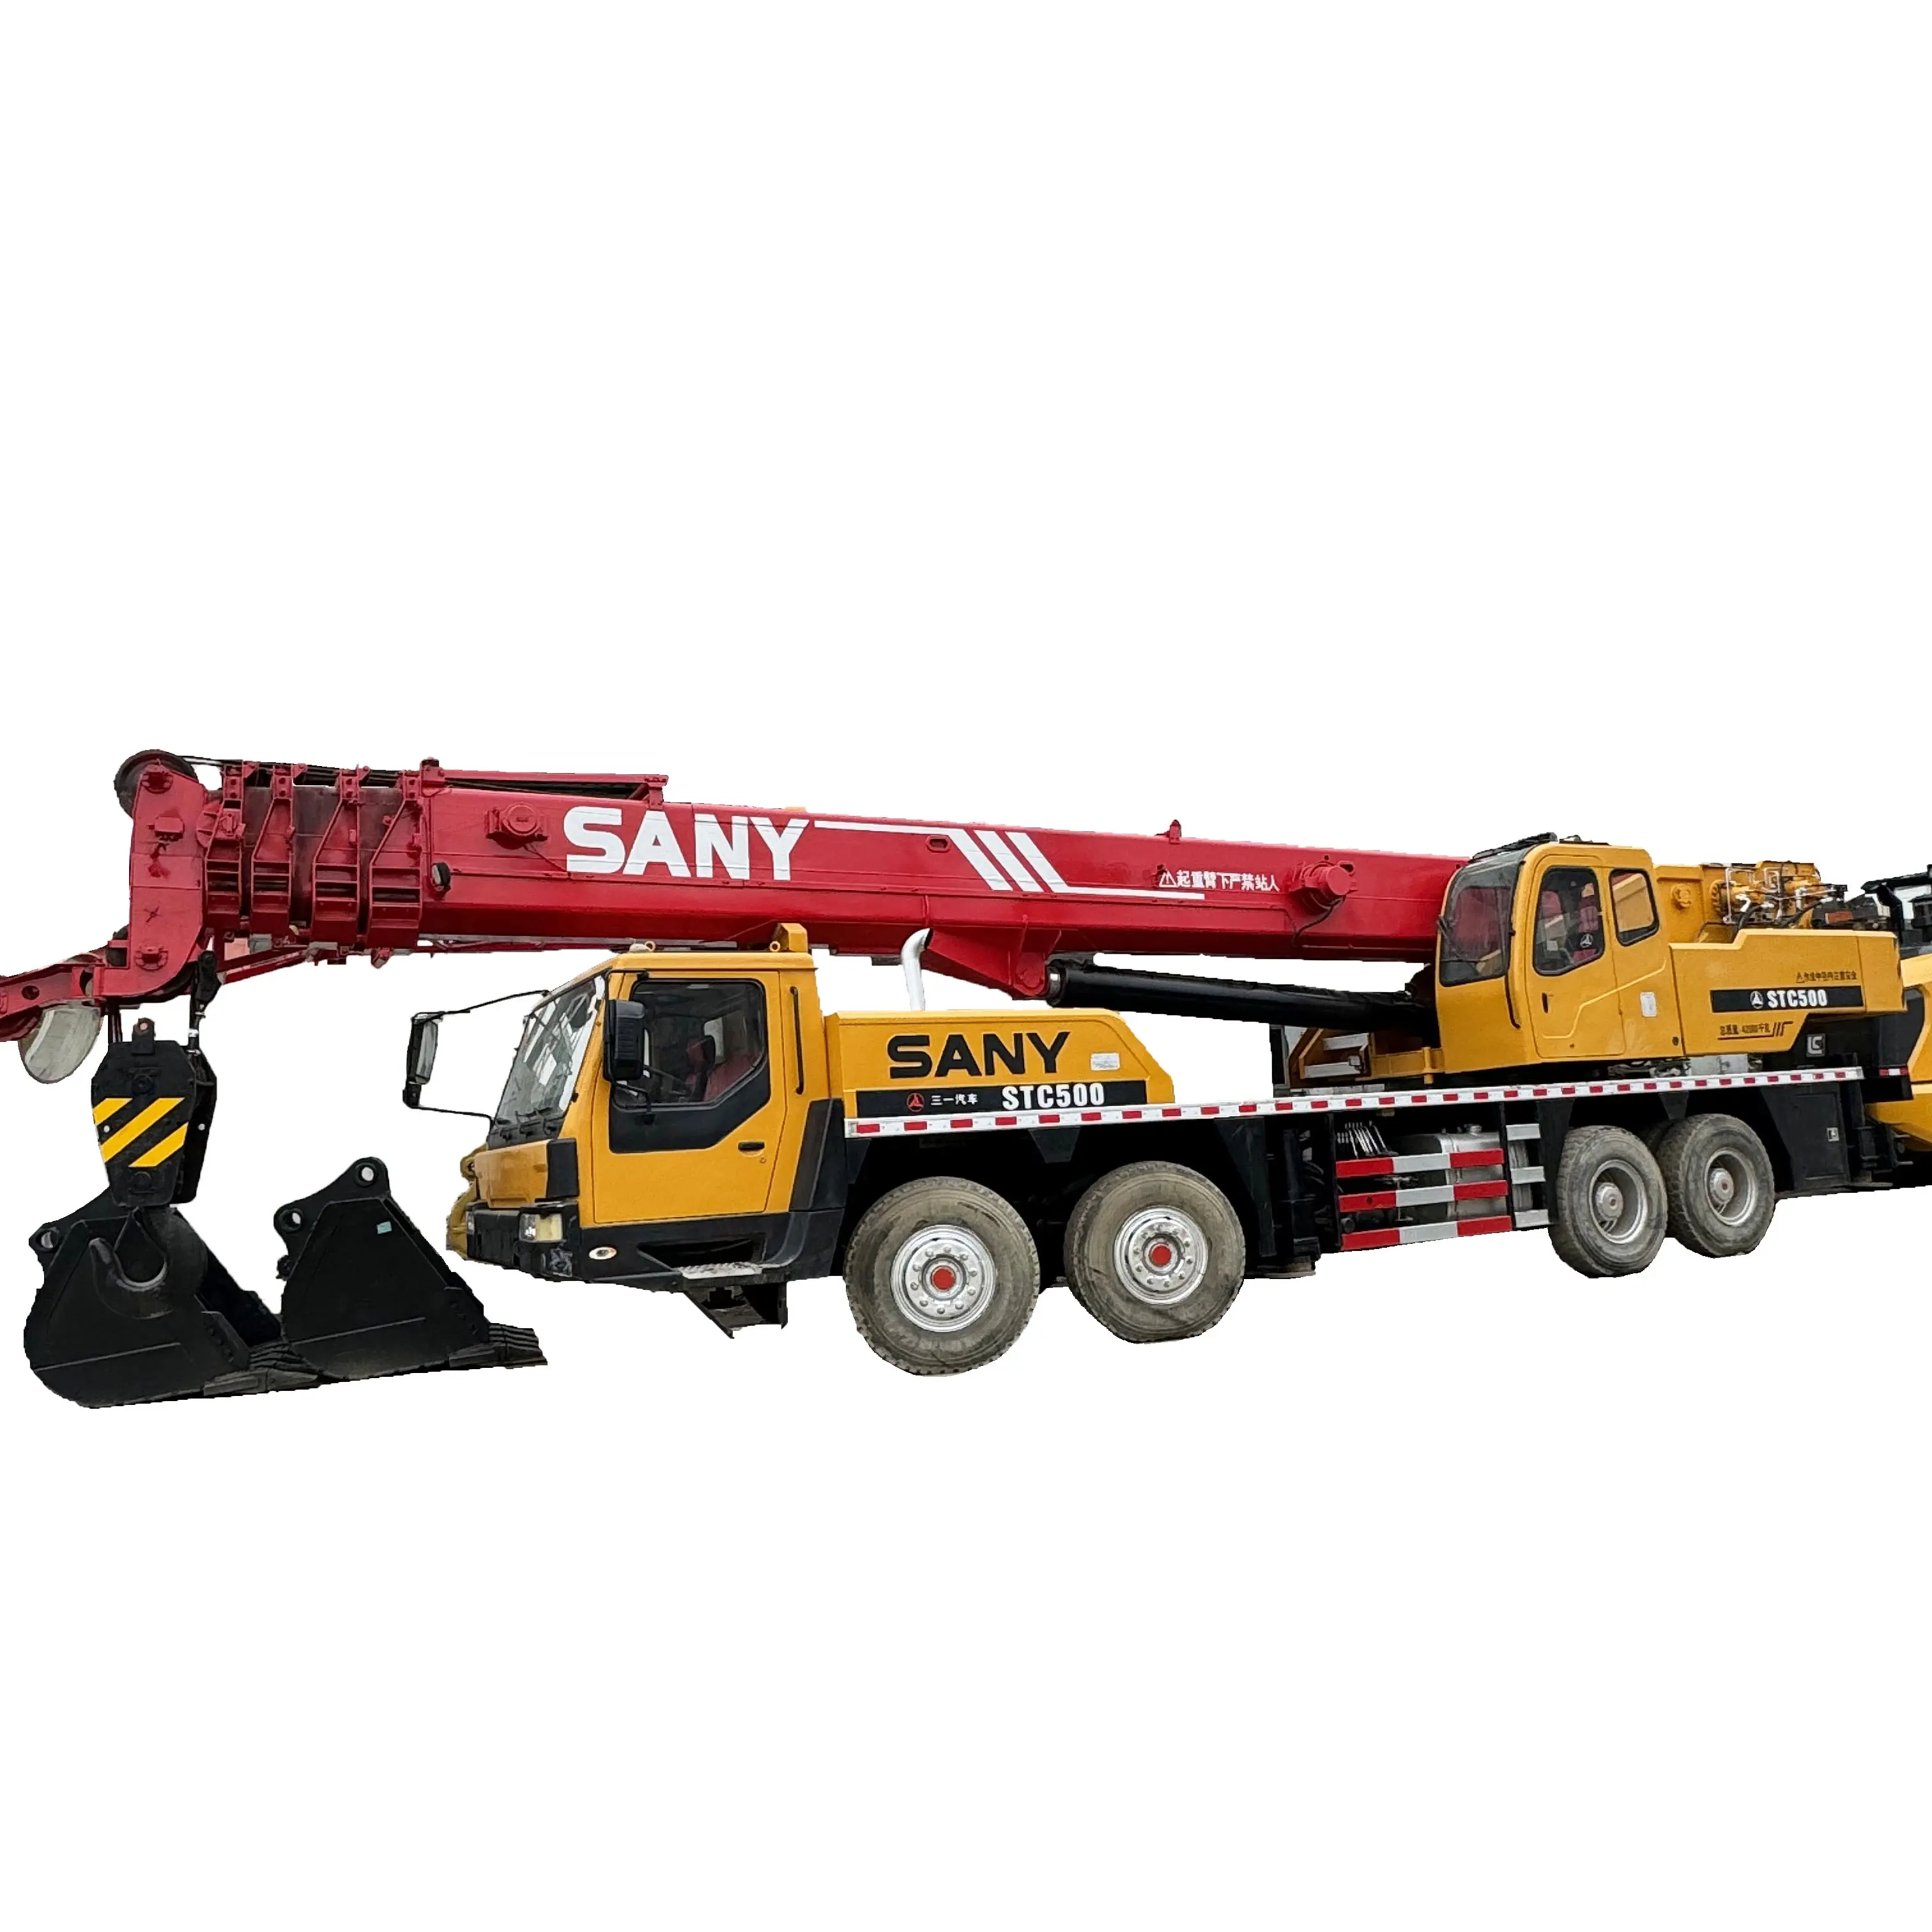 Guindaste de caminhão usado Sany STC500 de 50 toneladas, guindaste móvel hidráulico de segunda mão, preço barato, guindaste de caminhão usado